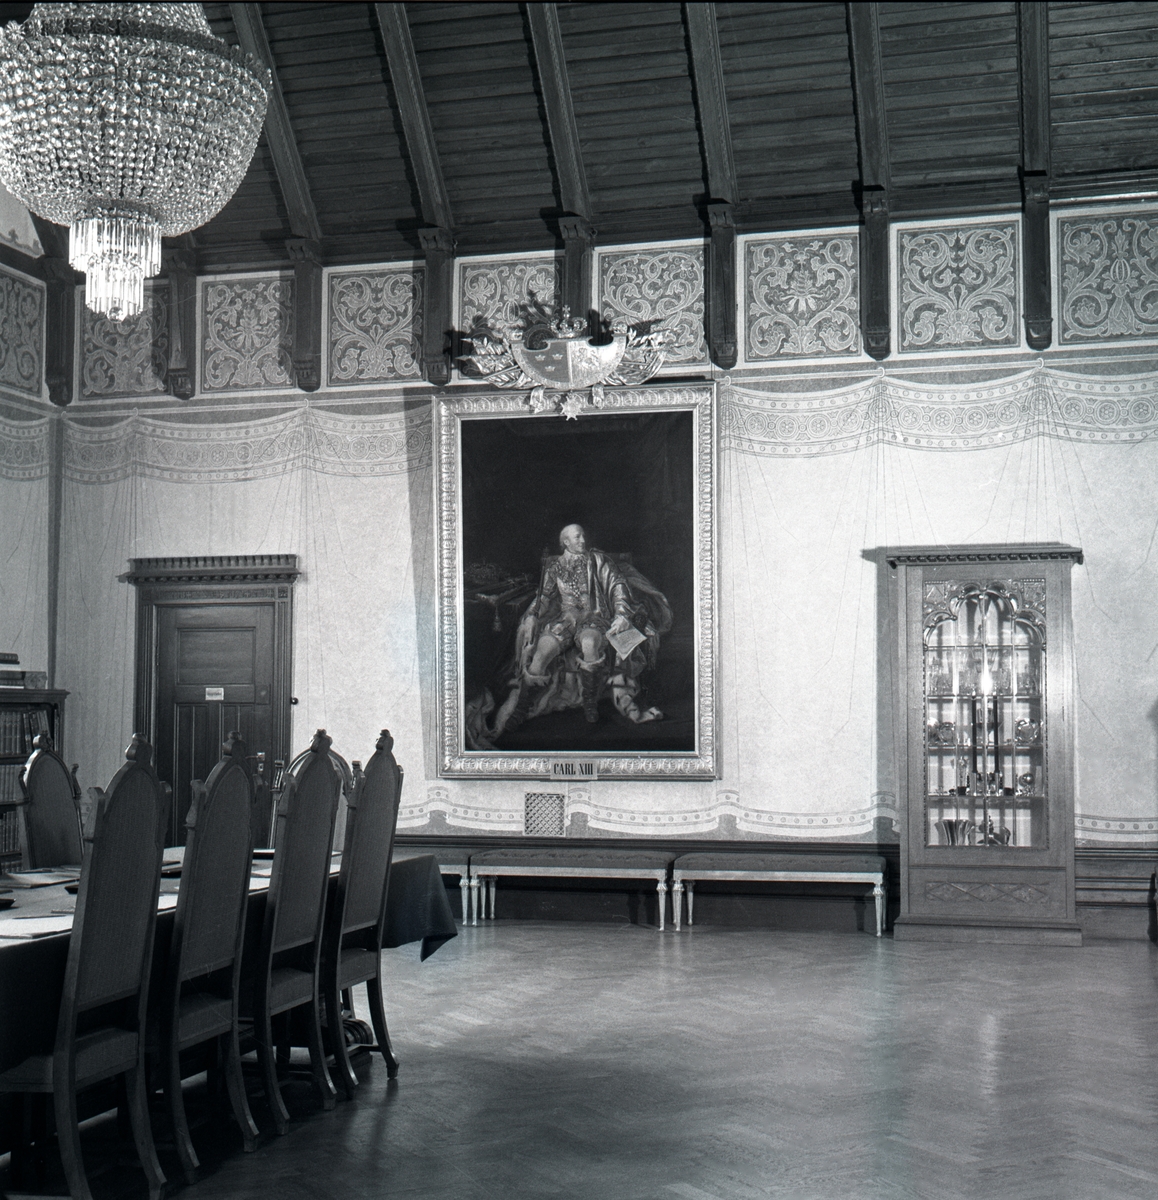 Frimurarehotellet renoverat efter brand. Interiör av lokalerna.
Frimurarehuset uppfört 1910-12 i nationalromantisk stil. Ritat av domkyrkoarkitekt Theodor Wåhlin.